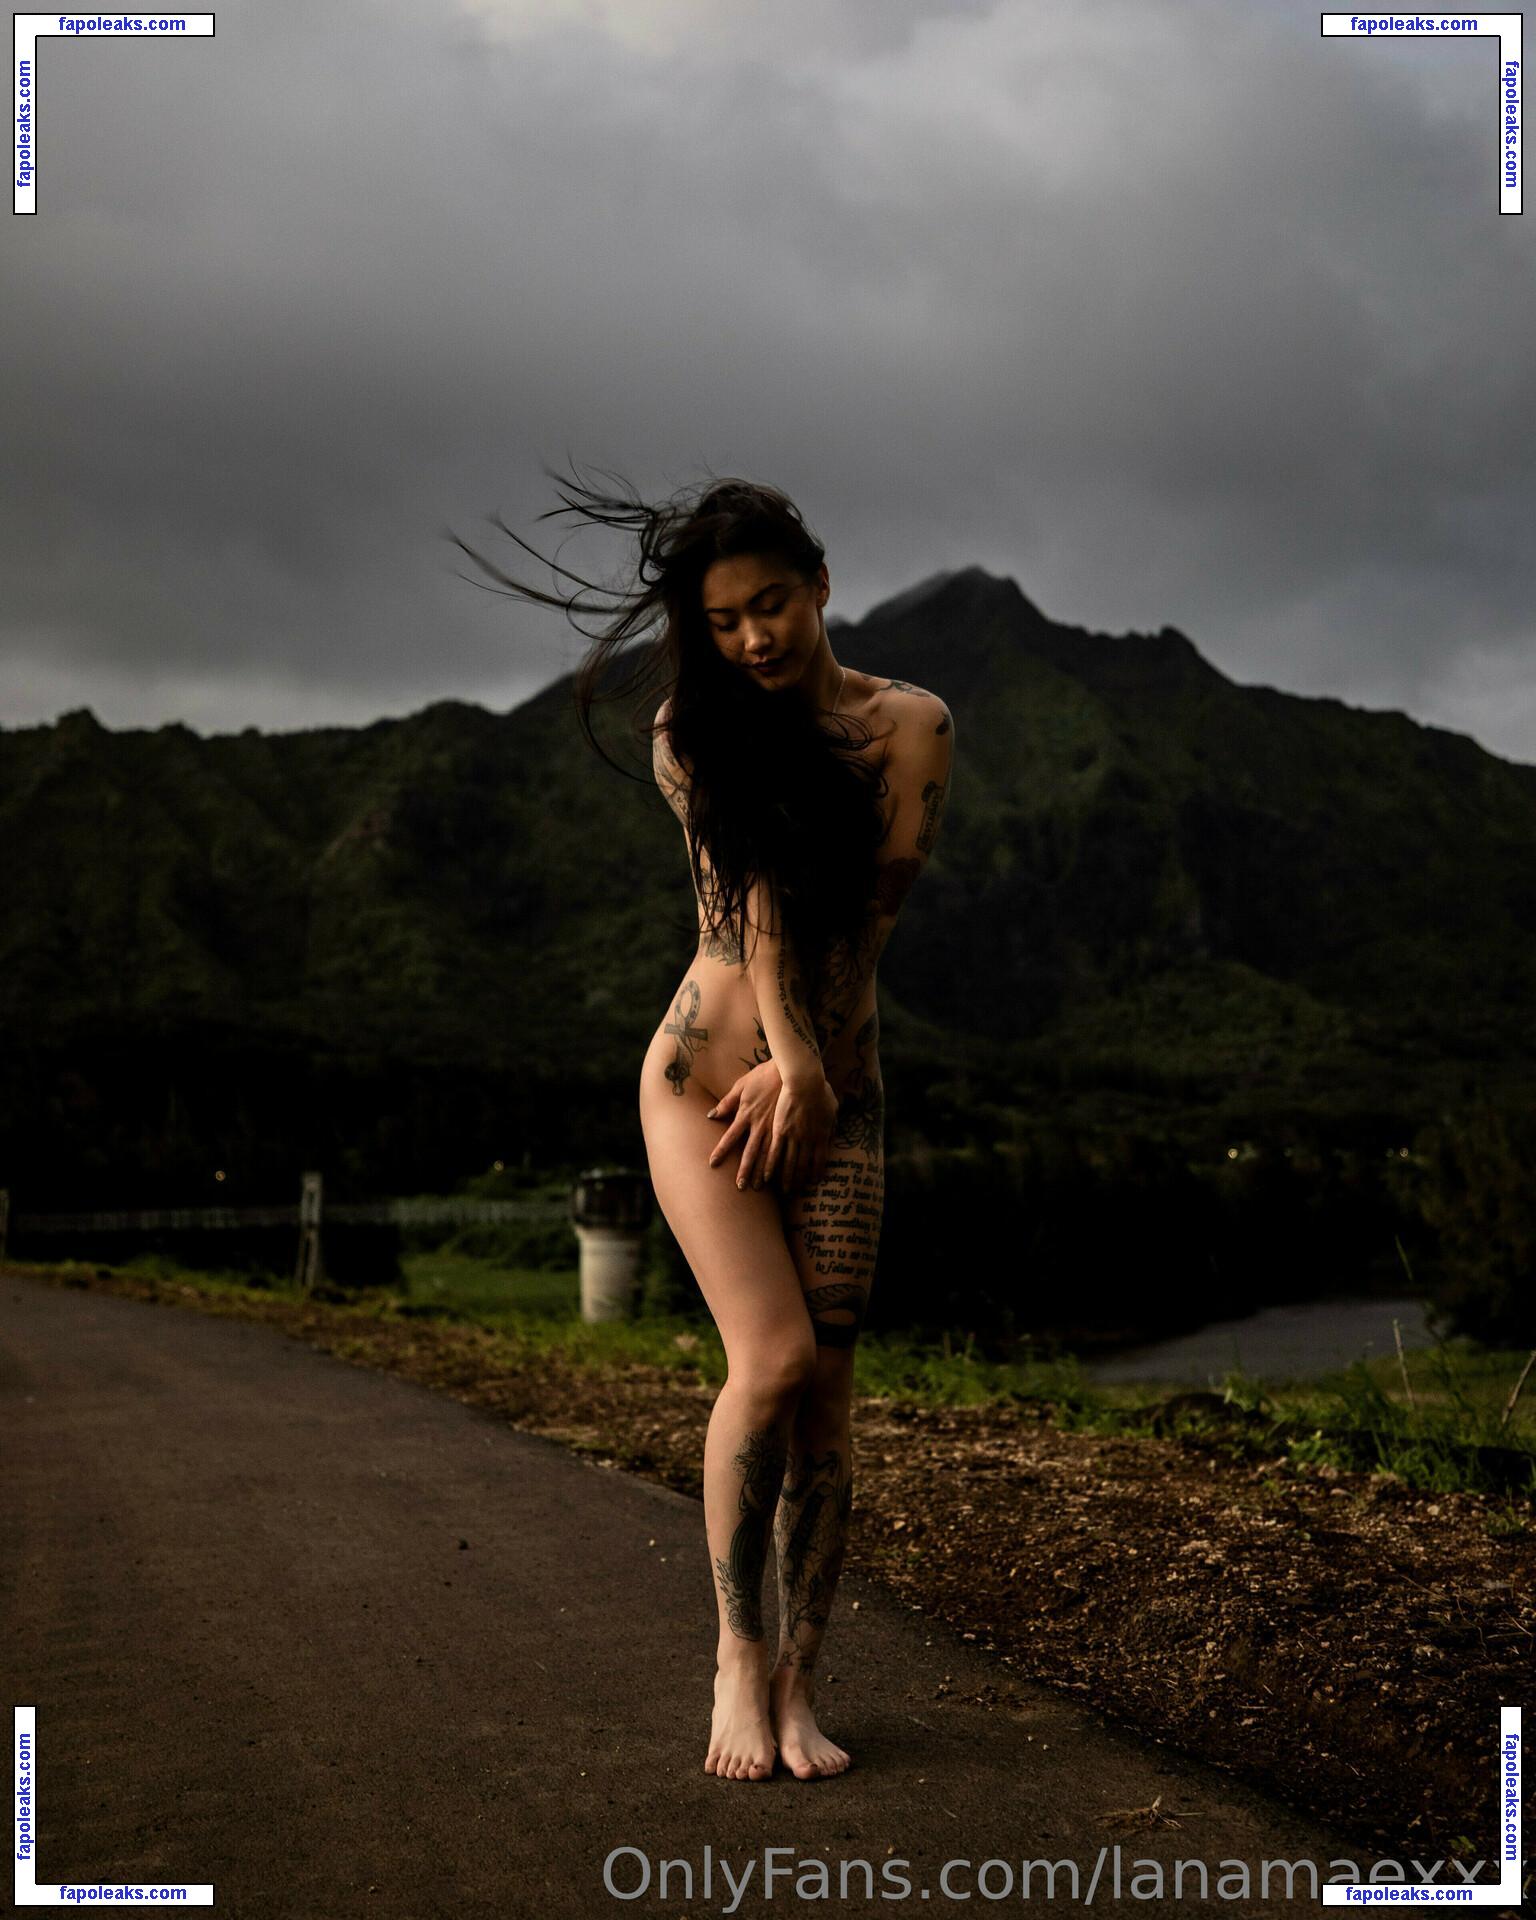 Lana Mae / lanamaewhereabouts / lanamaexxx nude photo #0002 from OnlyFans